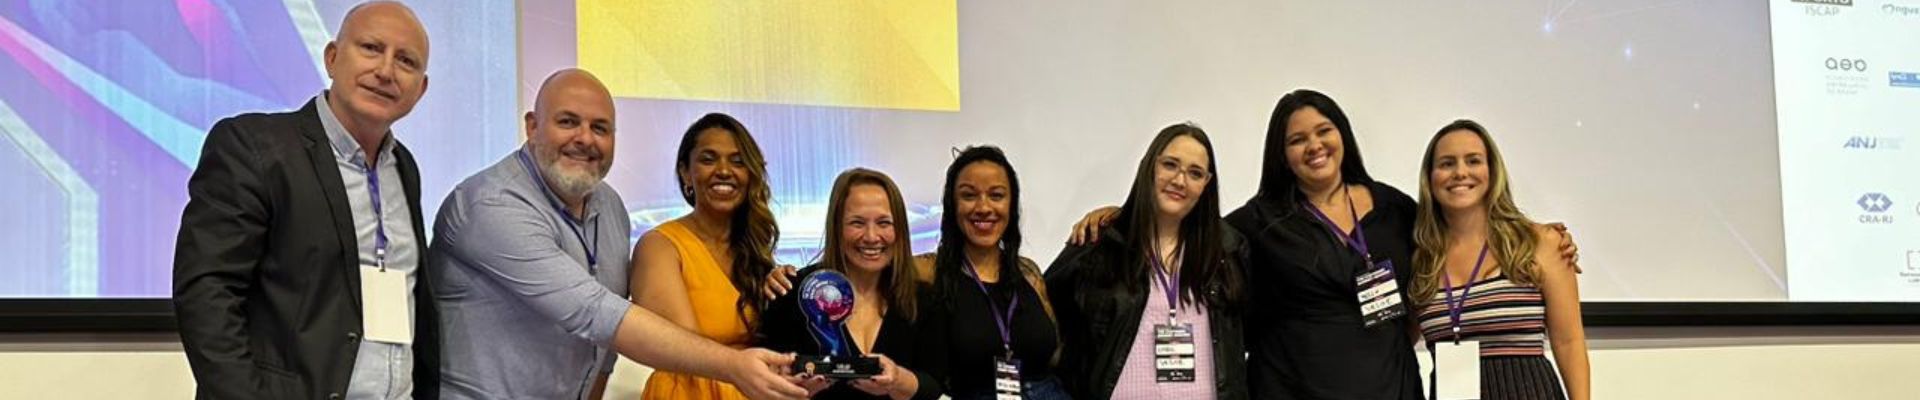 Veloe conquista o bronze na categoria “Cultura focada no cliente” do The Customer Summit Awards 2023